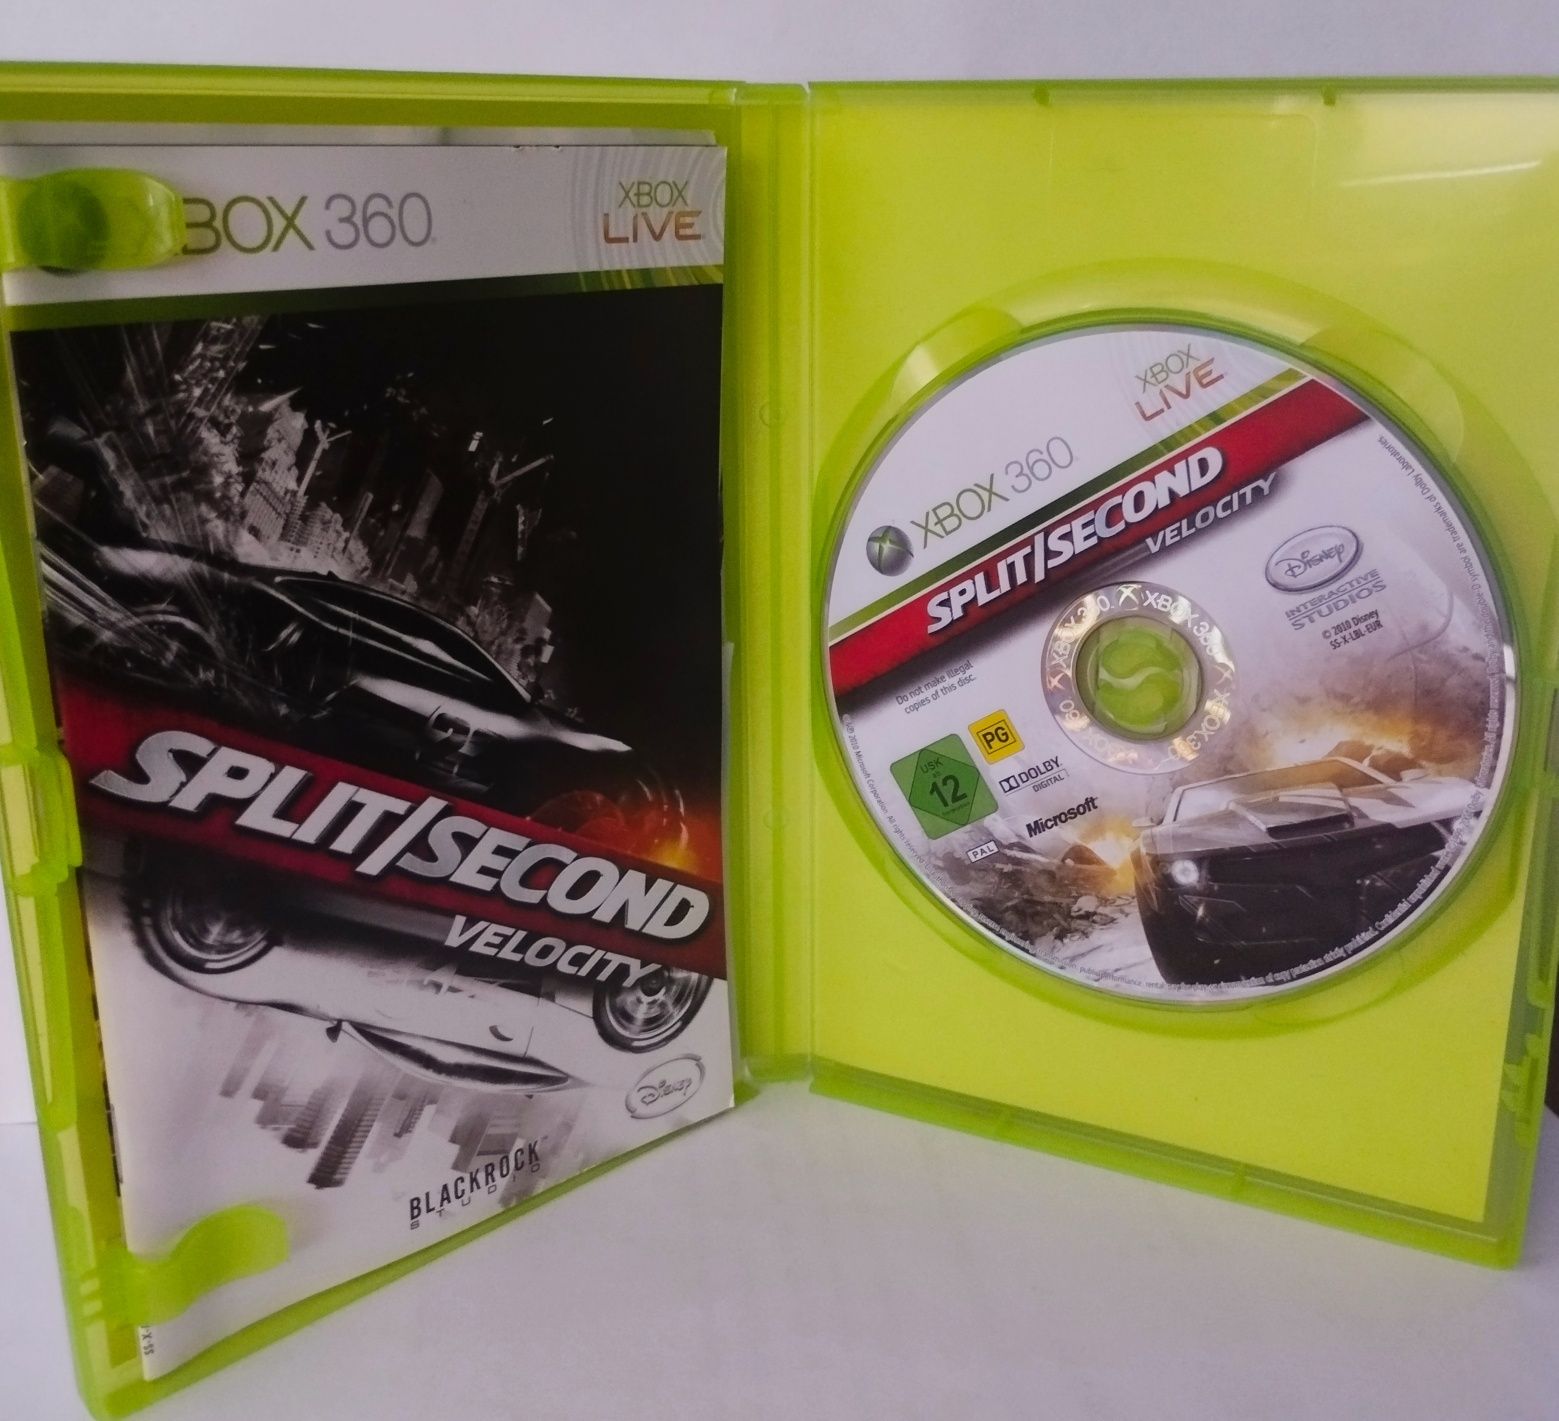 Splitsecond velocity Xbox 360